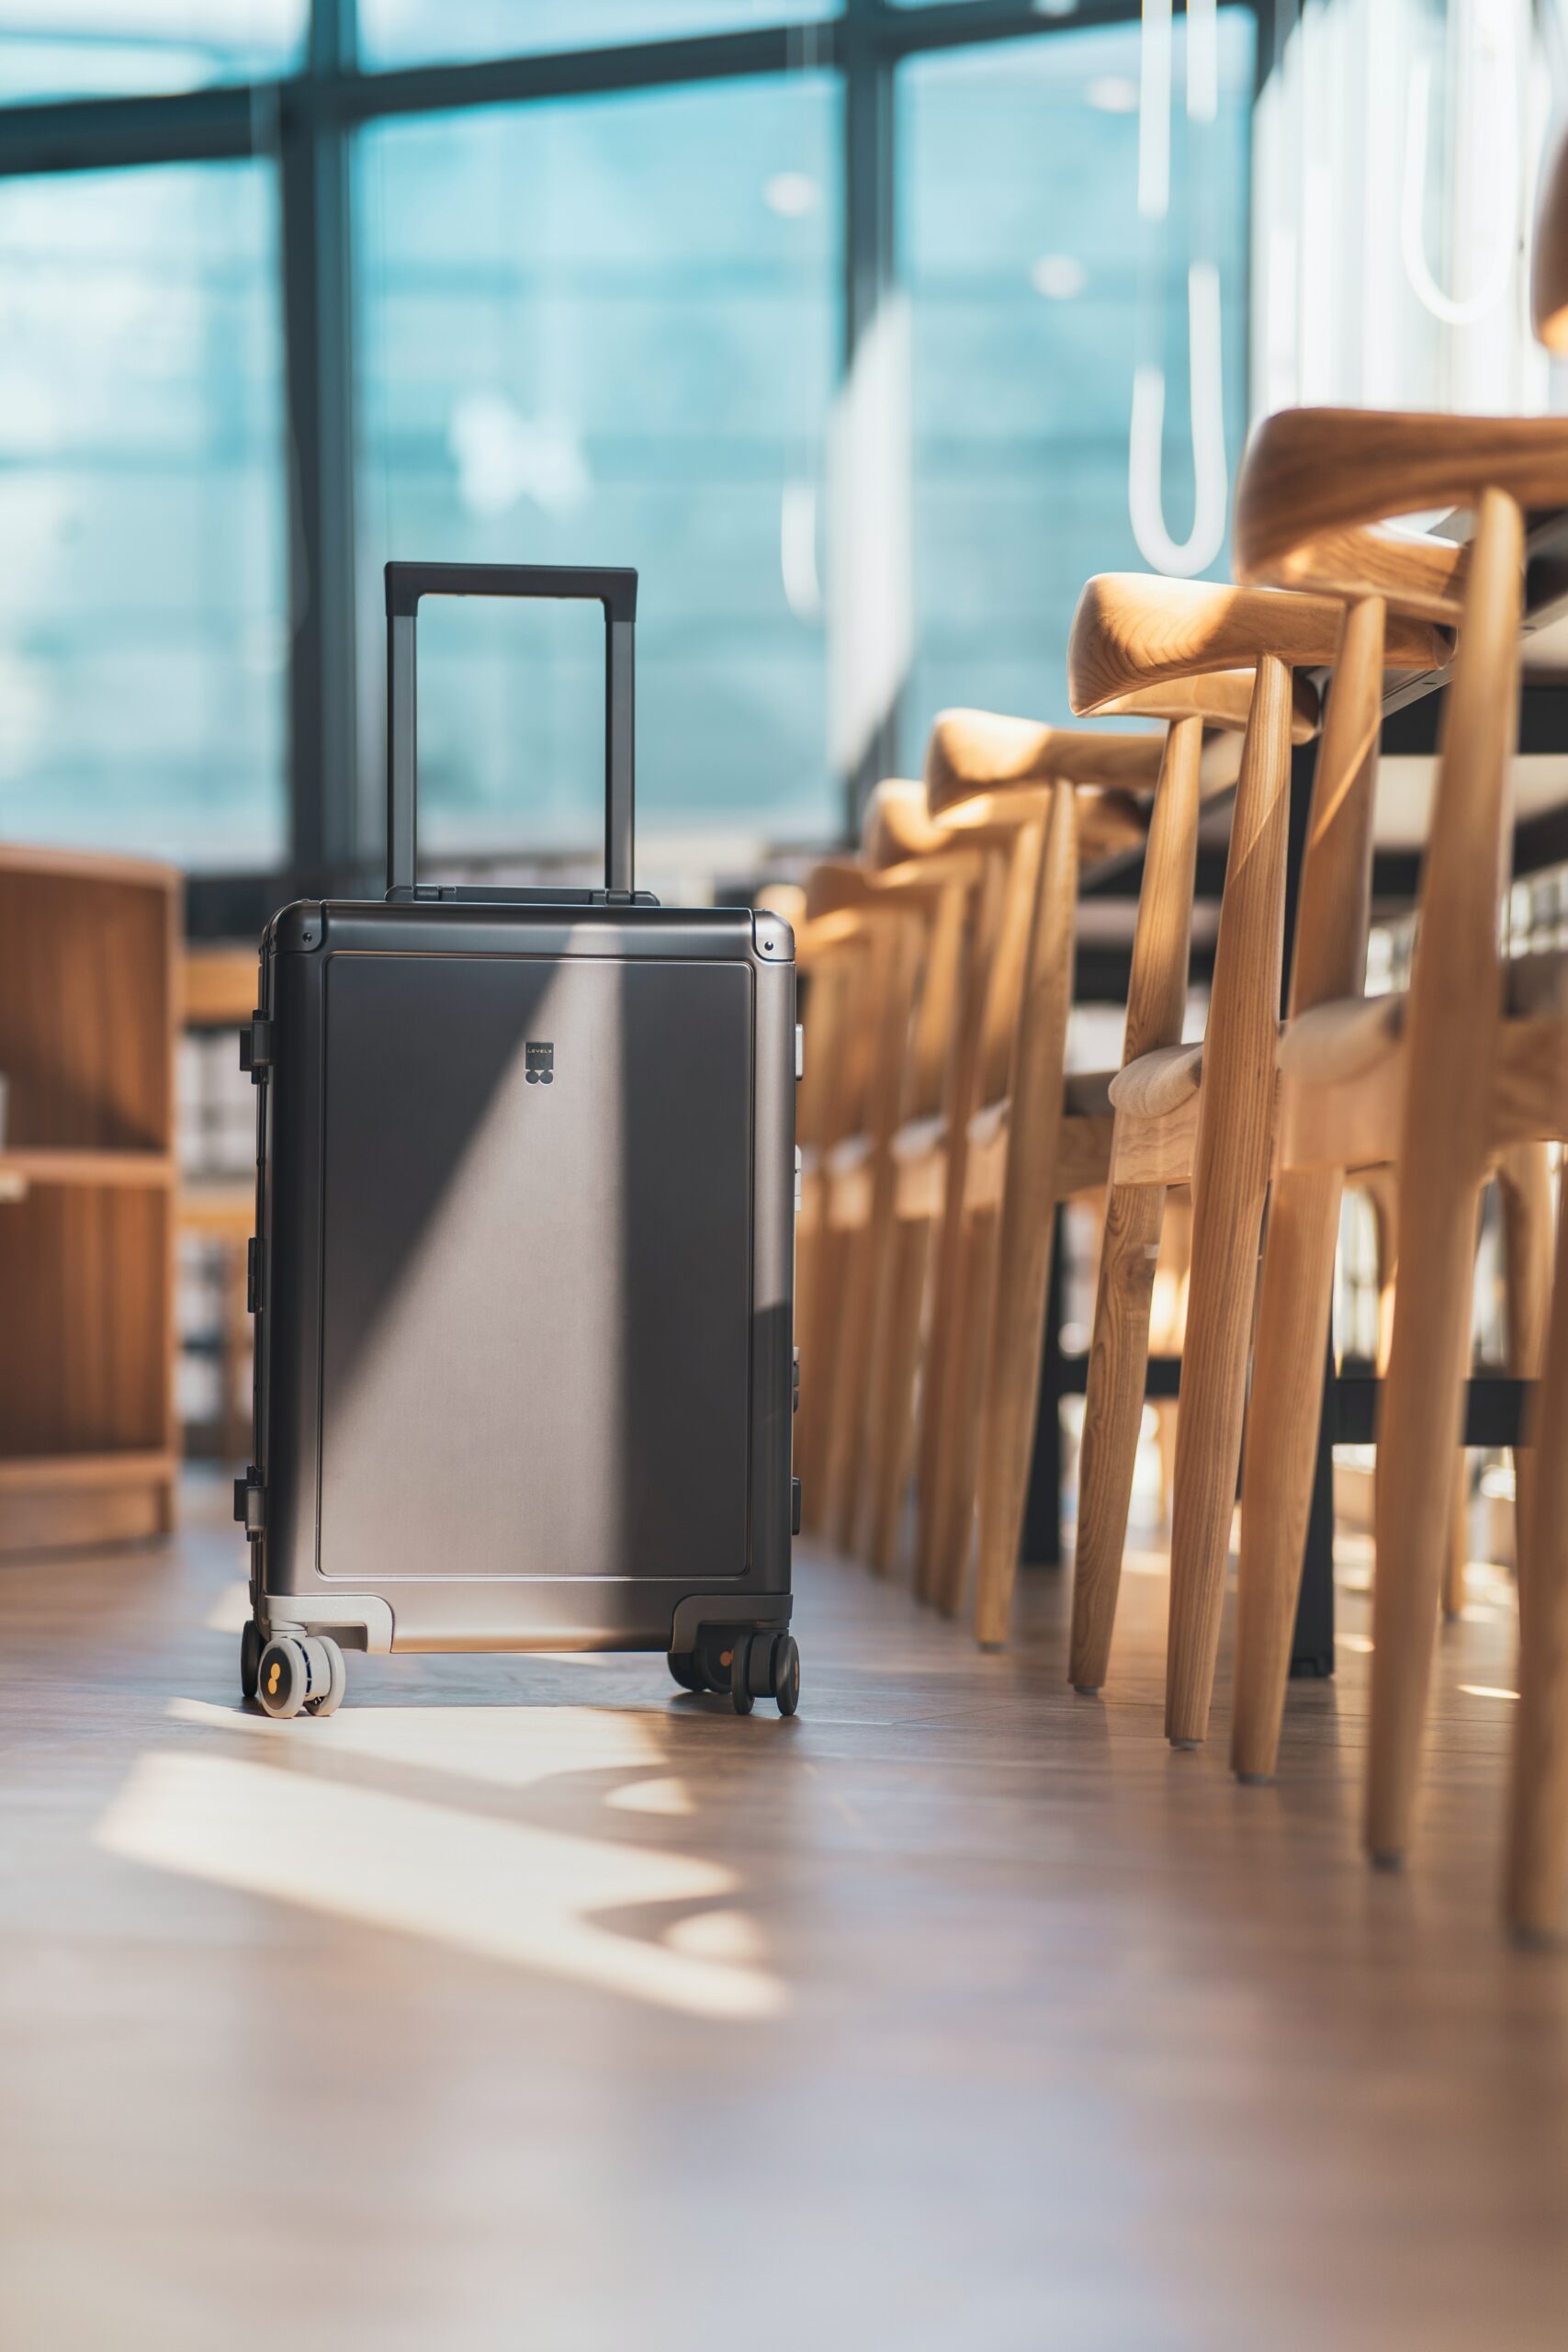 Πρακτικές συμβουλές για έξυπνο πακετάρισμα: 10 τρικ για να εξοικονομήσετε χώρο στη βαλίτσα σας για το επόμενο ταξίδι σας"
